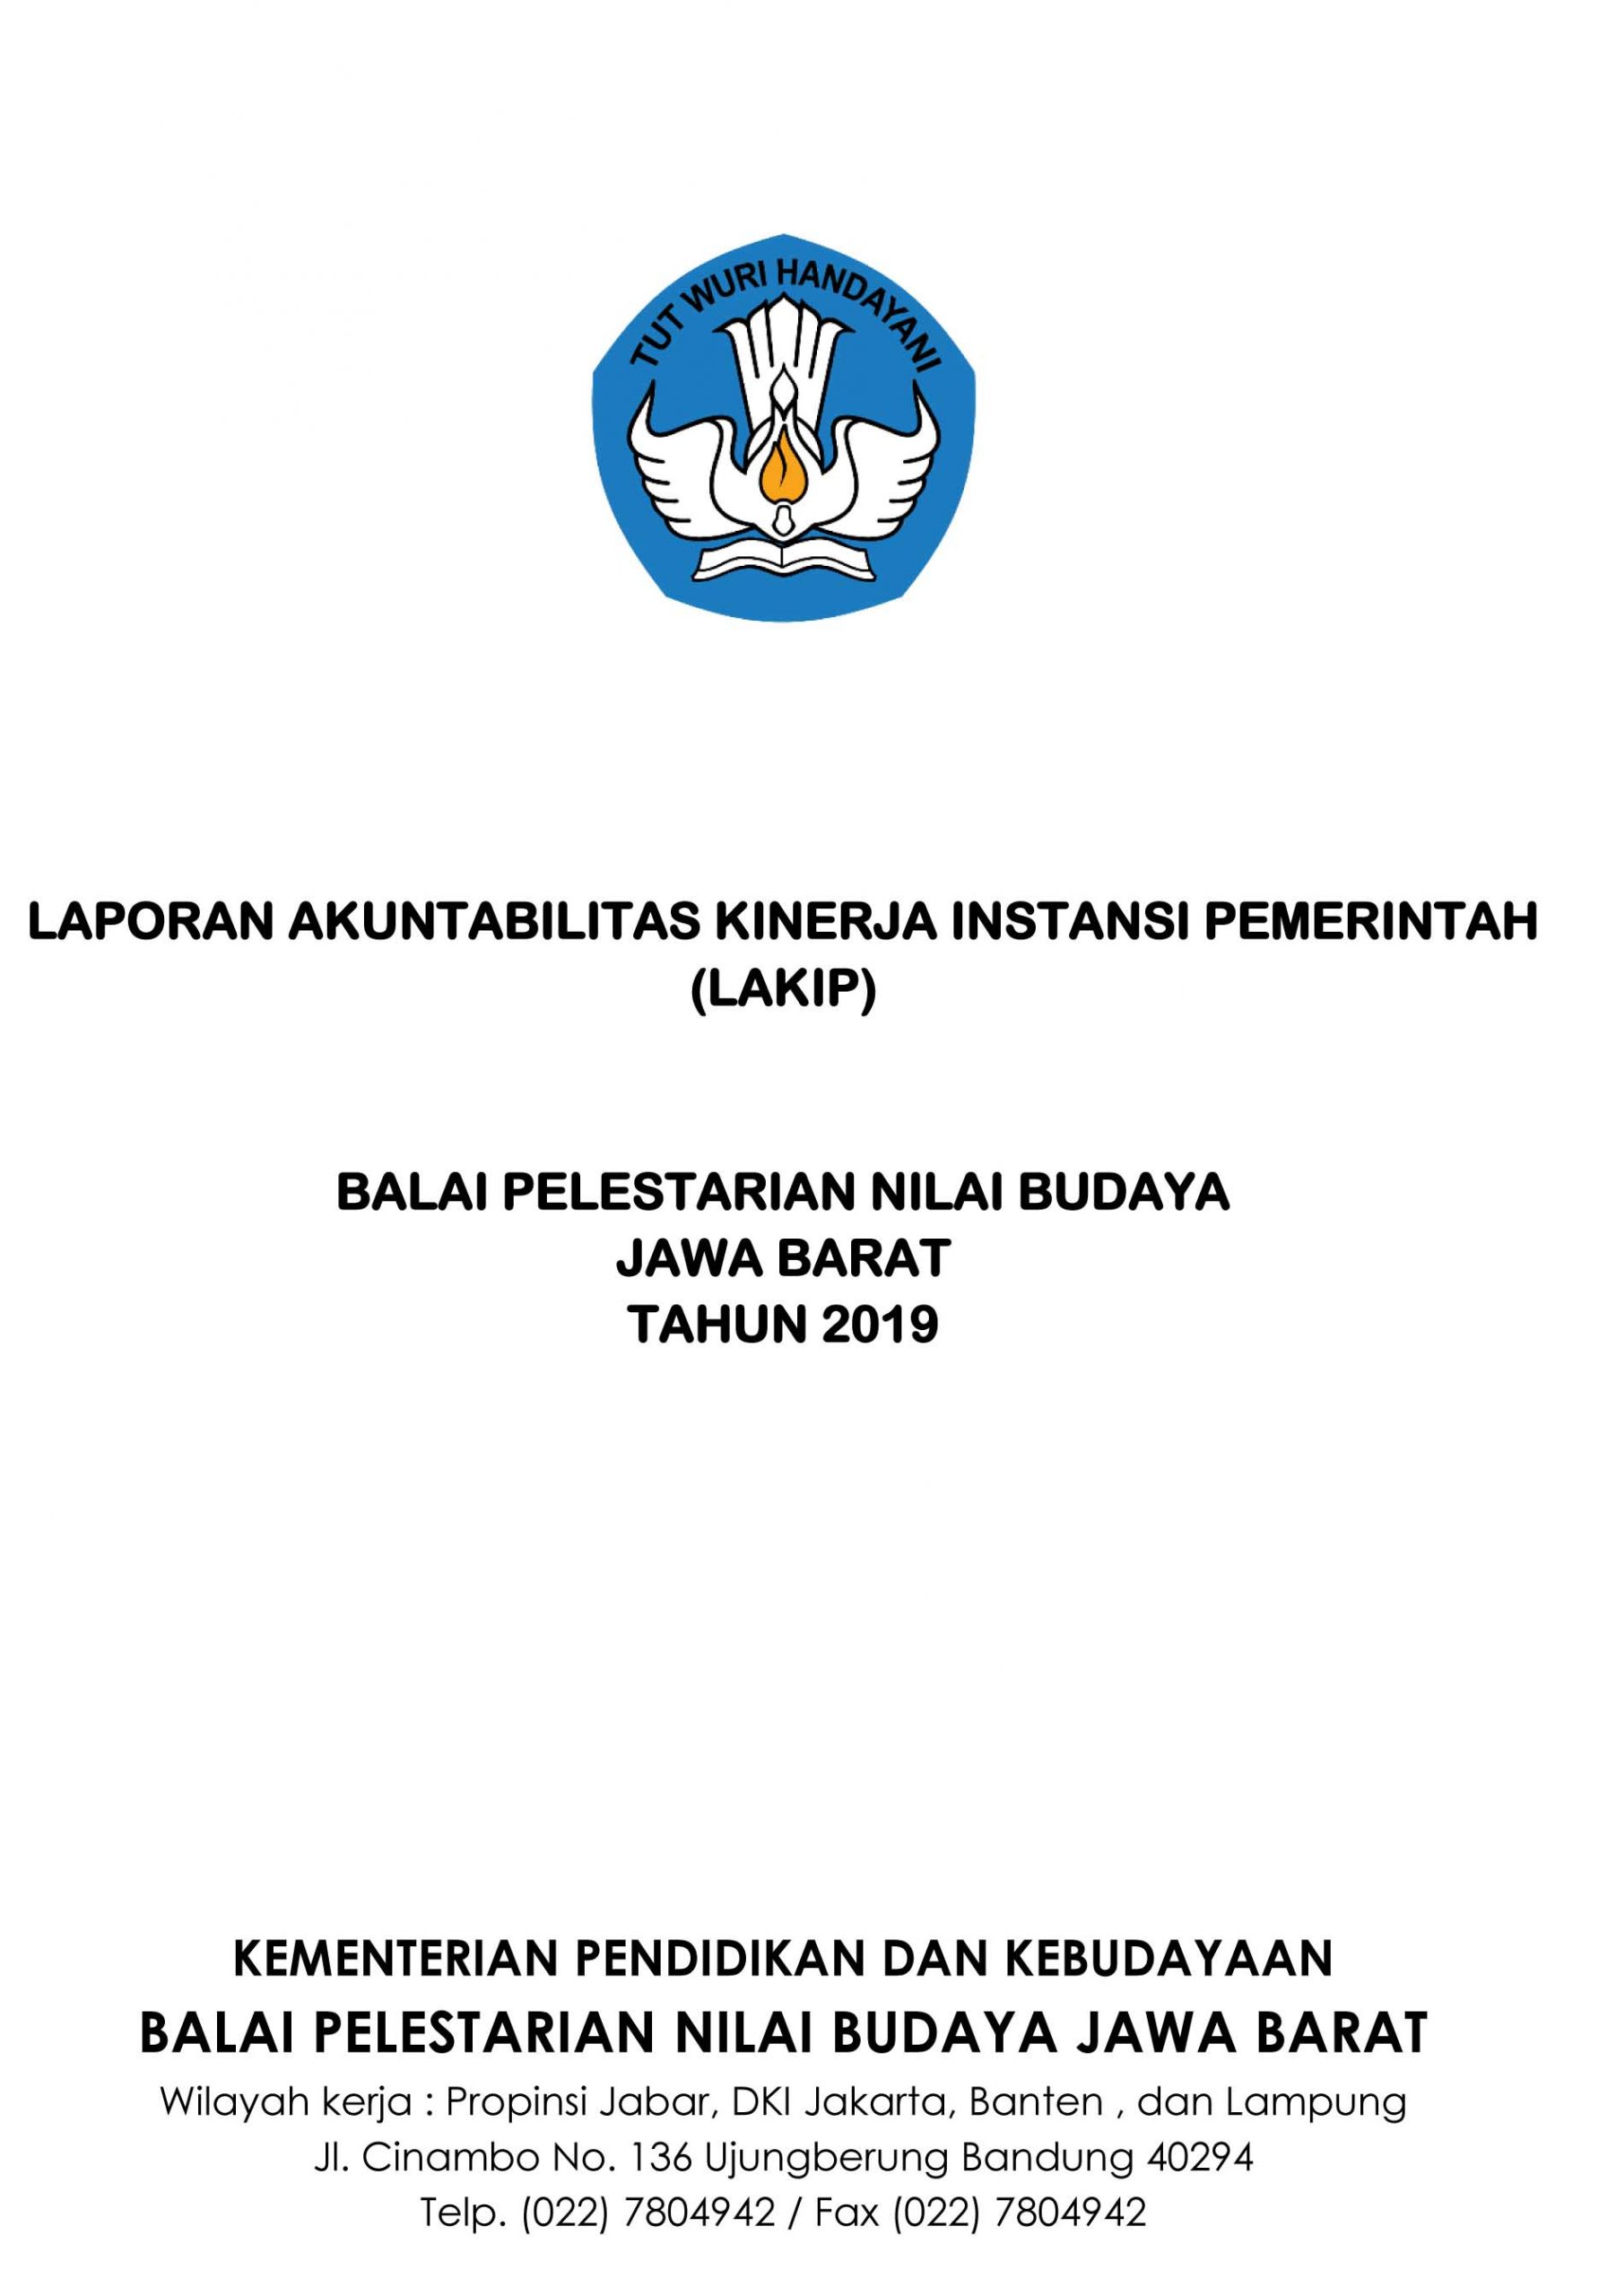 You are currently viewing Laporan Akuntabilitas Kinerja Instansi Pemerintah (LAKIP) BPNB Jawa Barat Tahun 2019